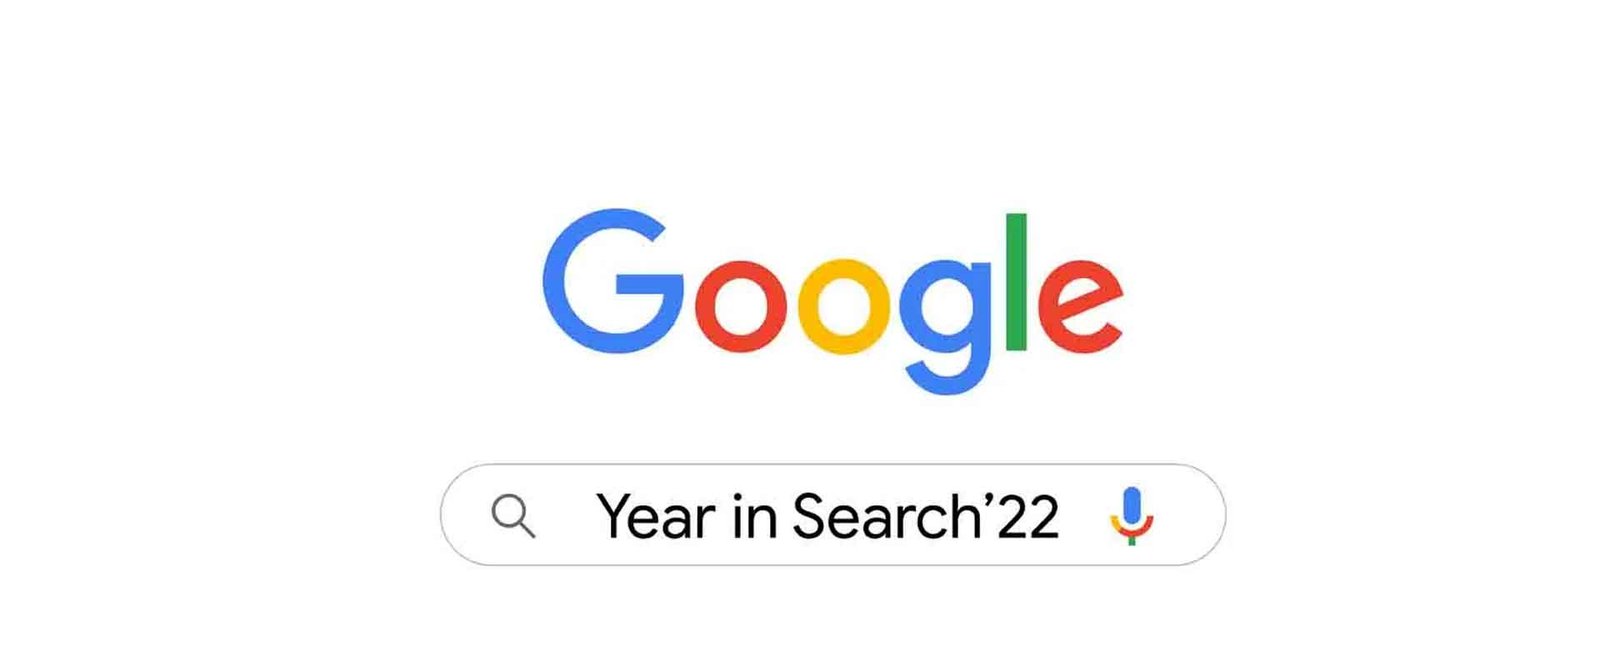 Özet 2022 Google Arama Trendleri11